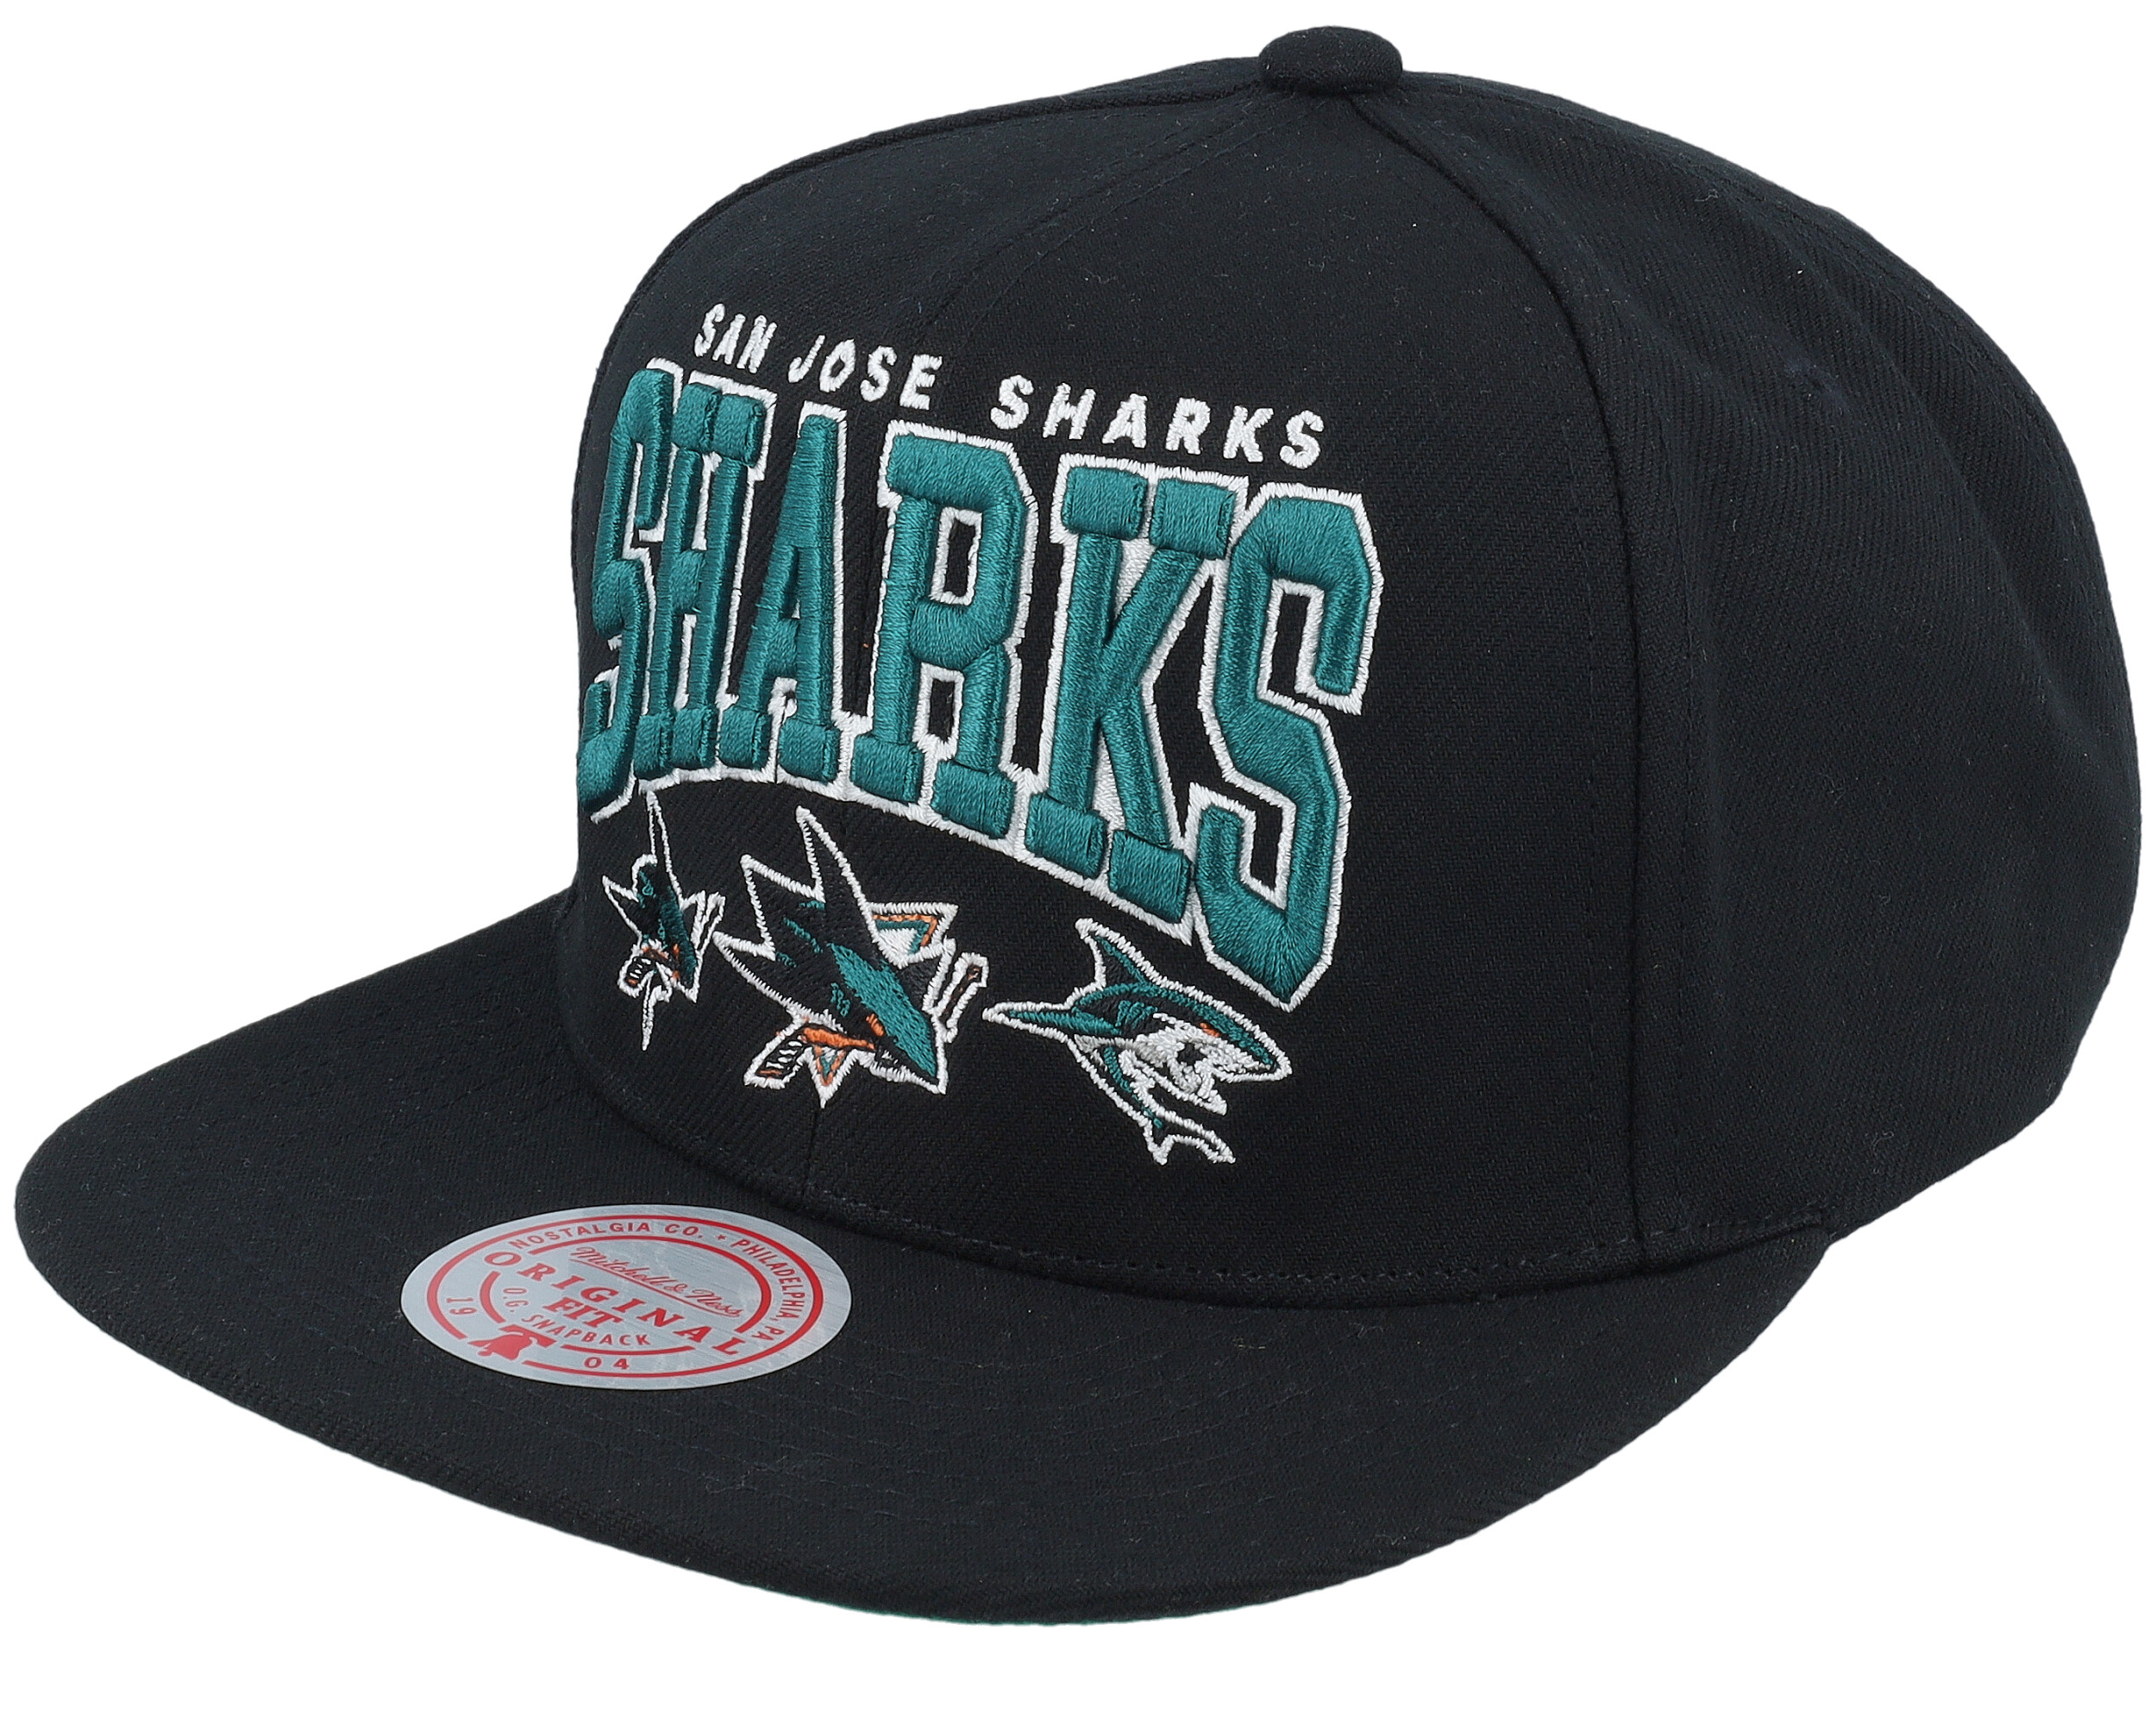 San Jose Sharks Hats, Sharks Hat, San Jose Sharks Knit Hats, Snapbacks,  Sharks Caps